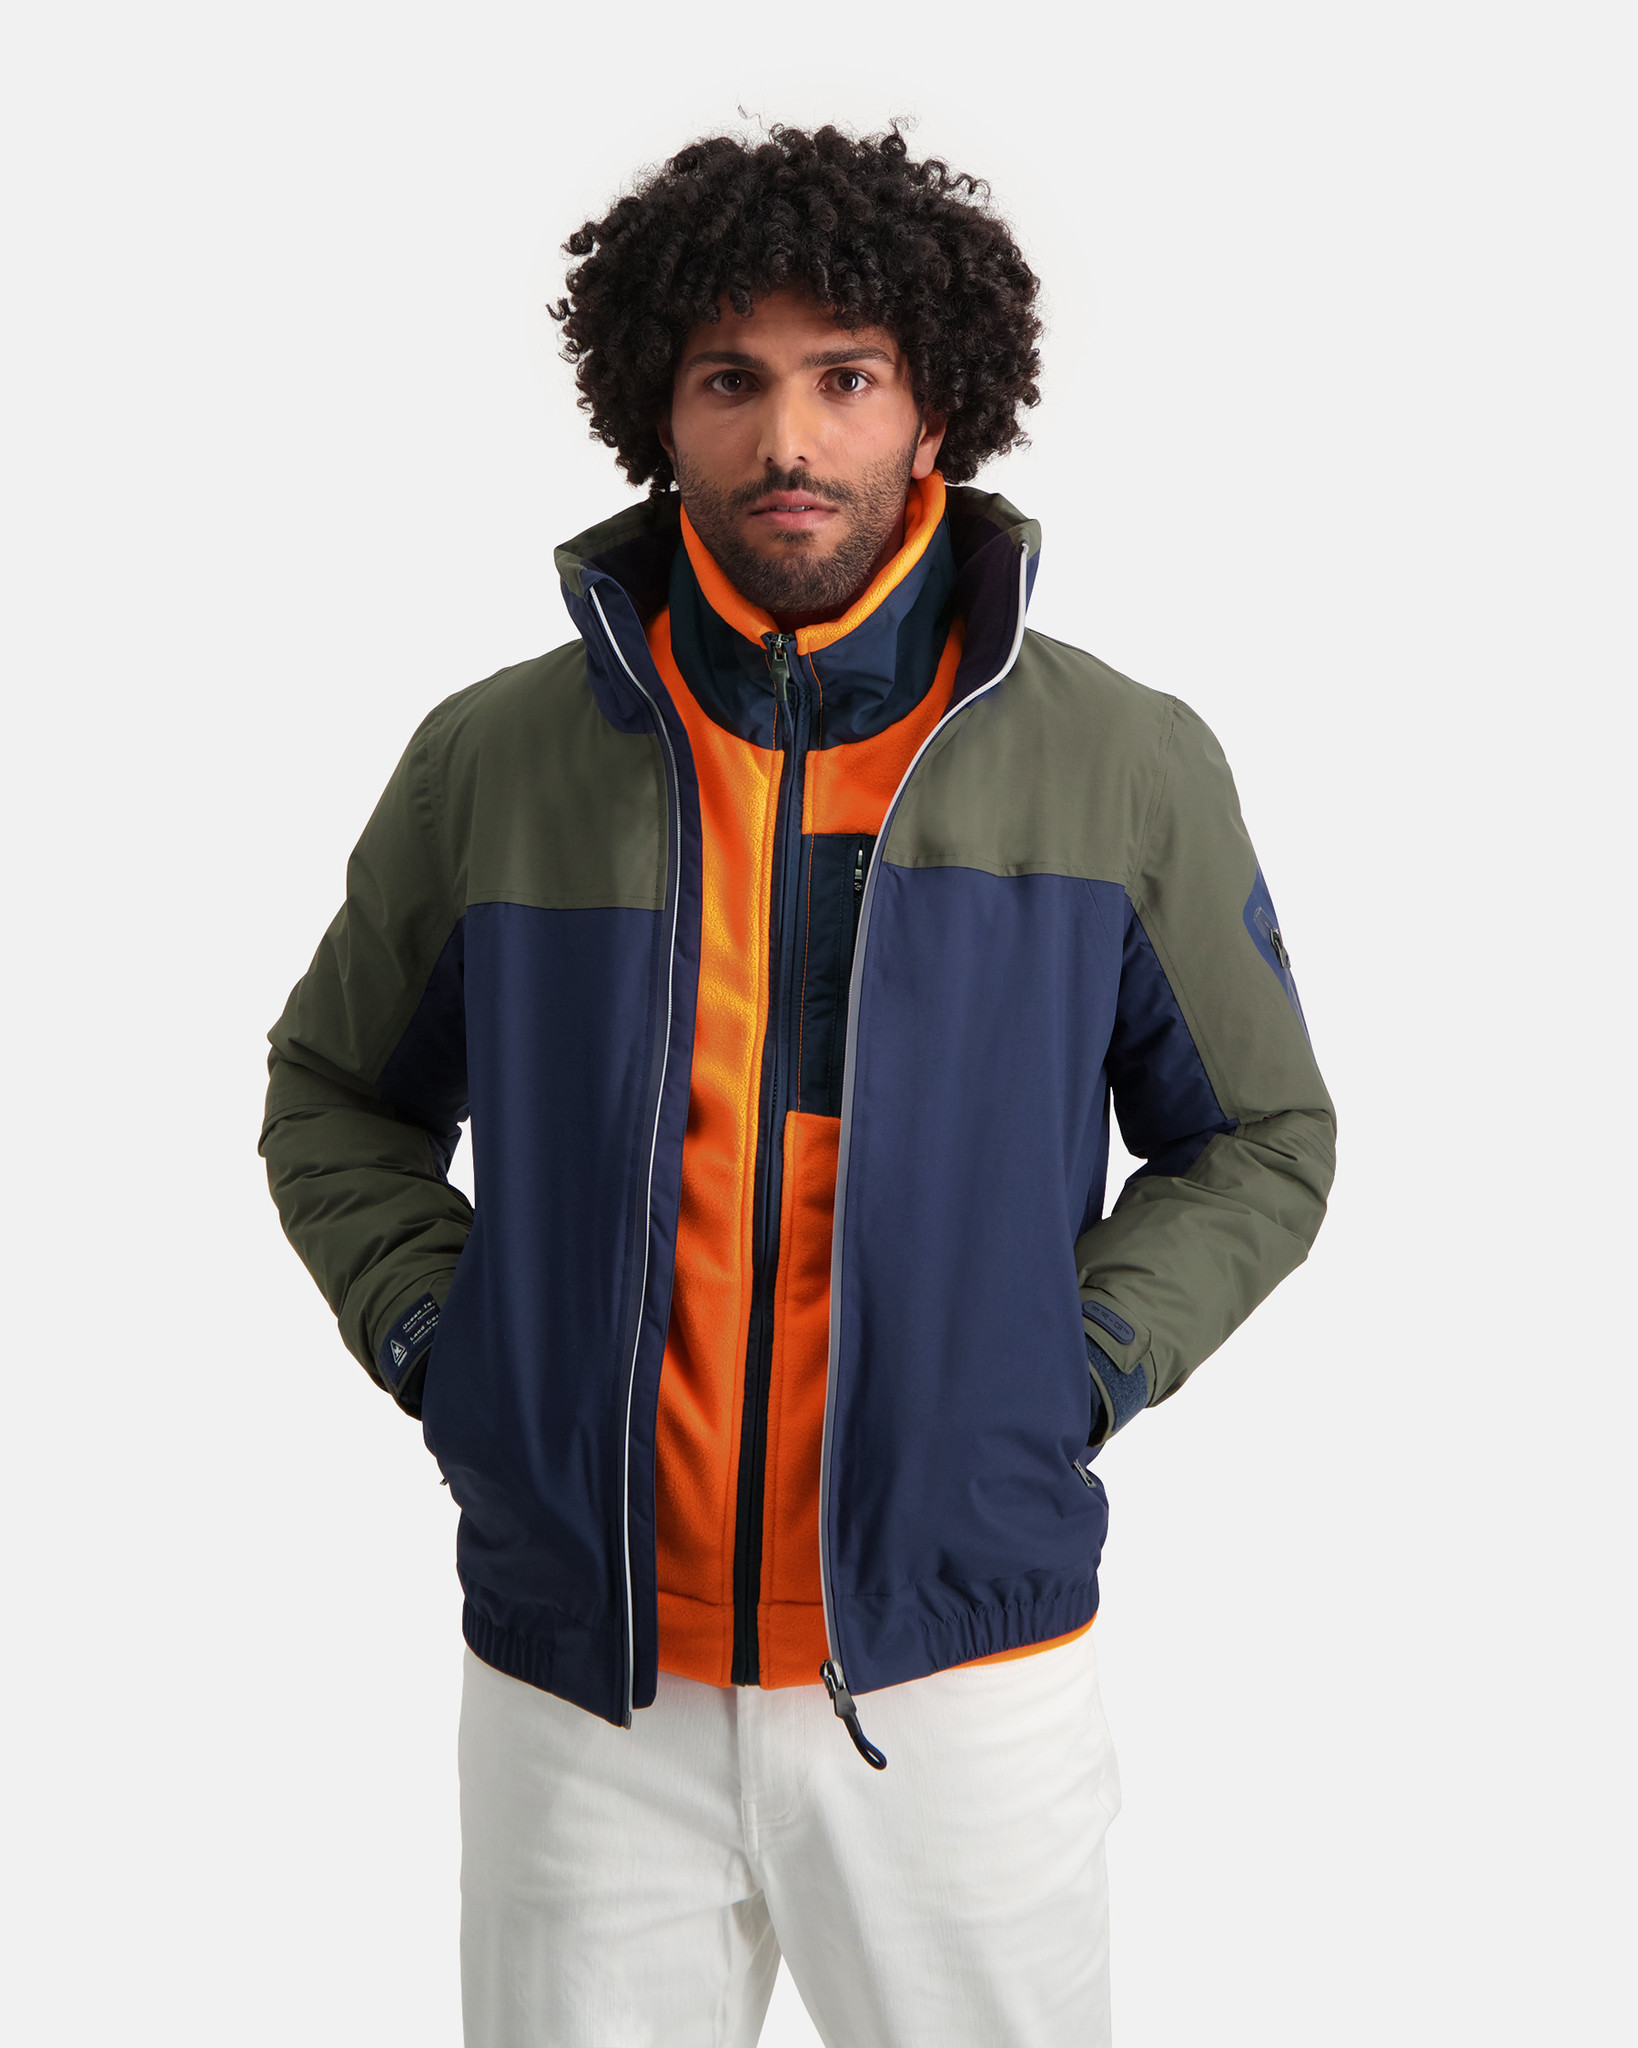 SALE - Gaastra Rummage Jacket - 2XL - Corcoran's Menswear